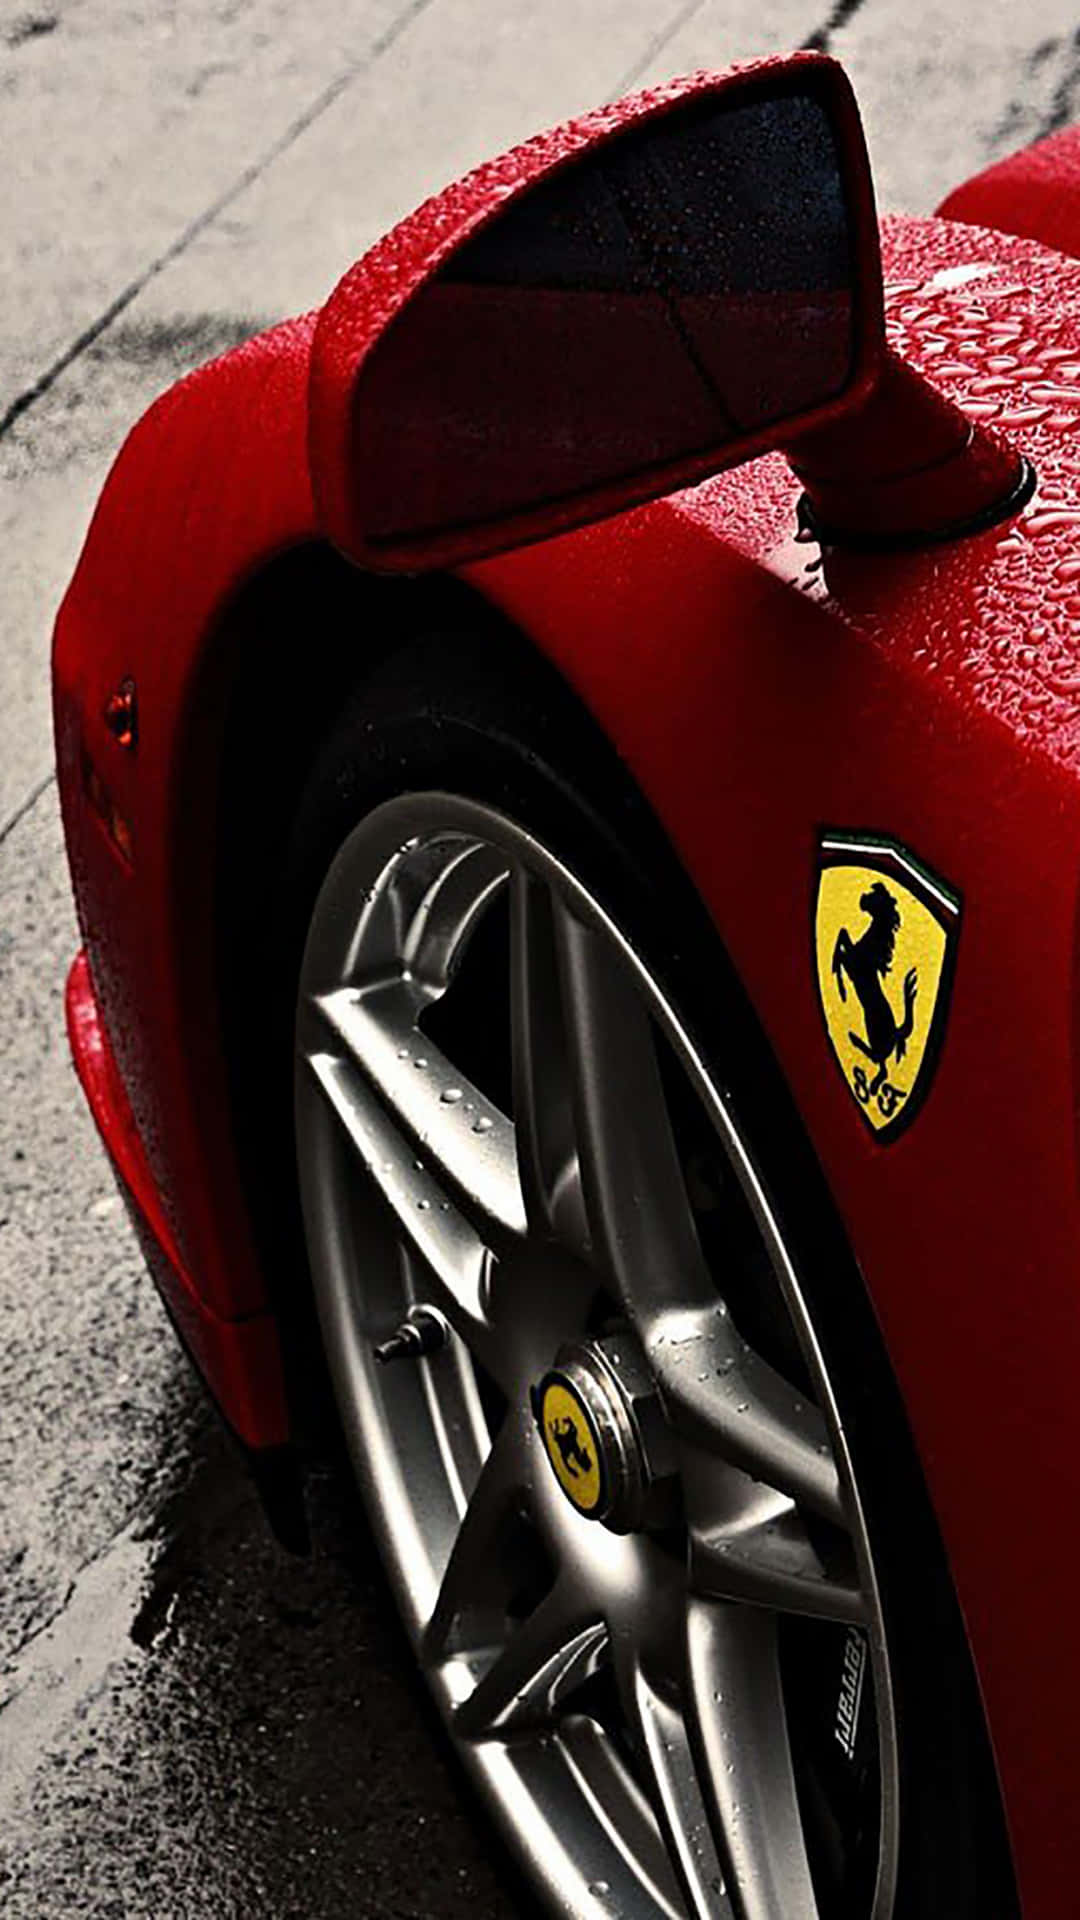 Fåkraften Och Prestigen Av En Ferrari Med Iphone X. Wallpaper